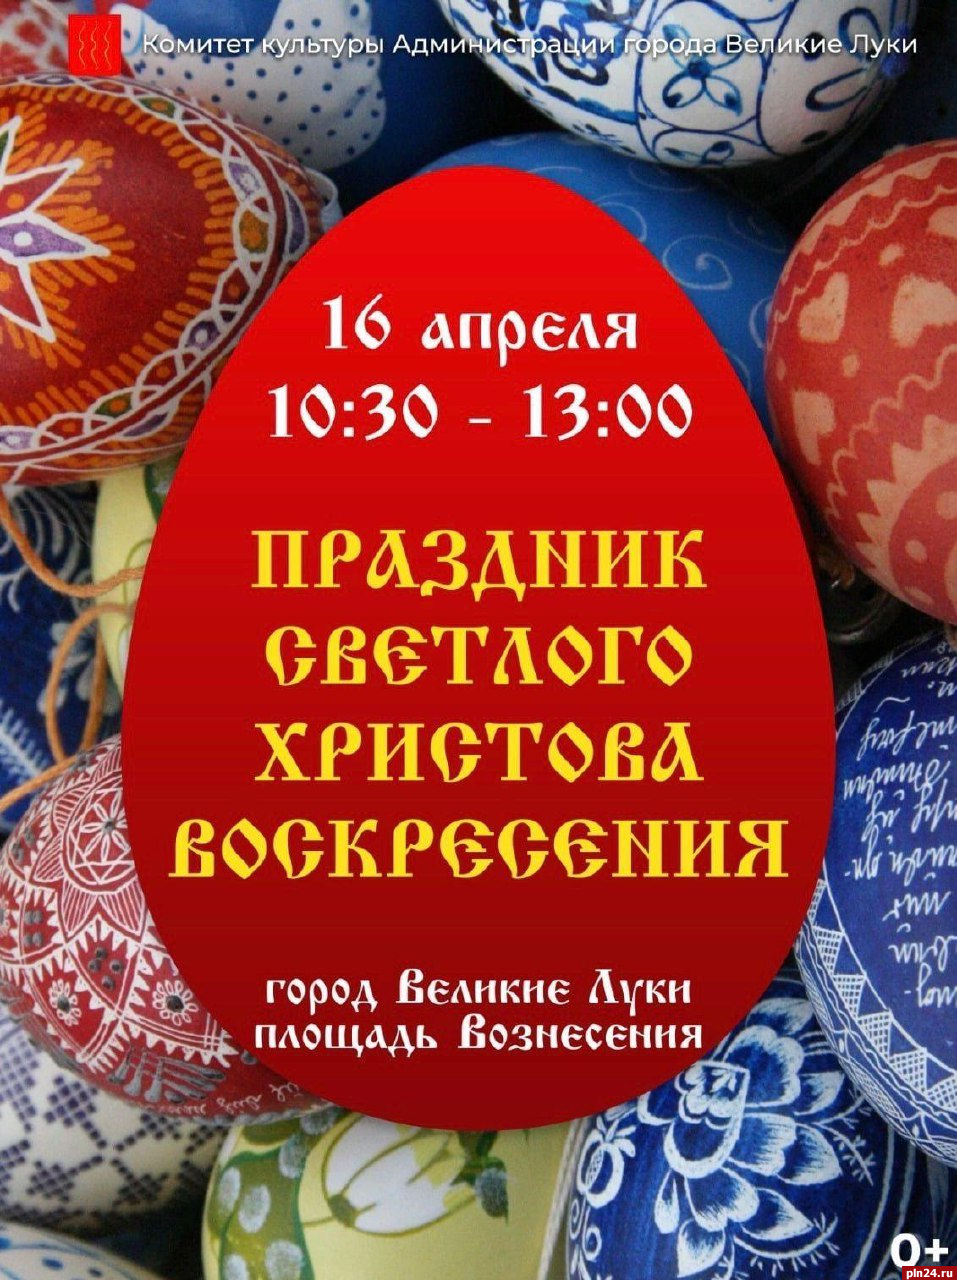 Пасхальный фестиваль пройдет в Великих Луках 16 апреля